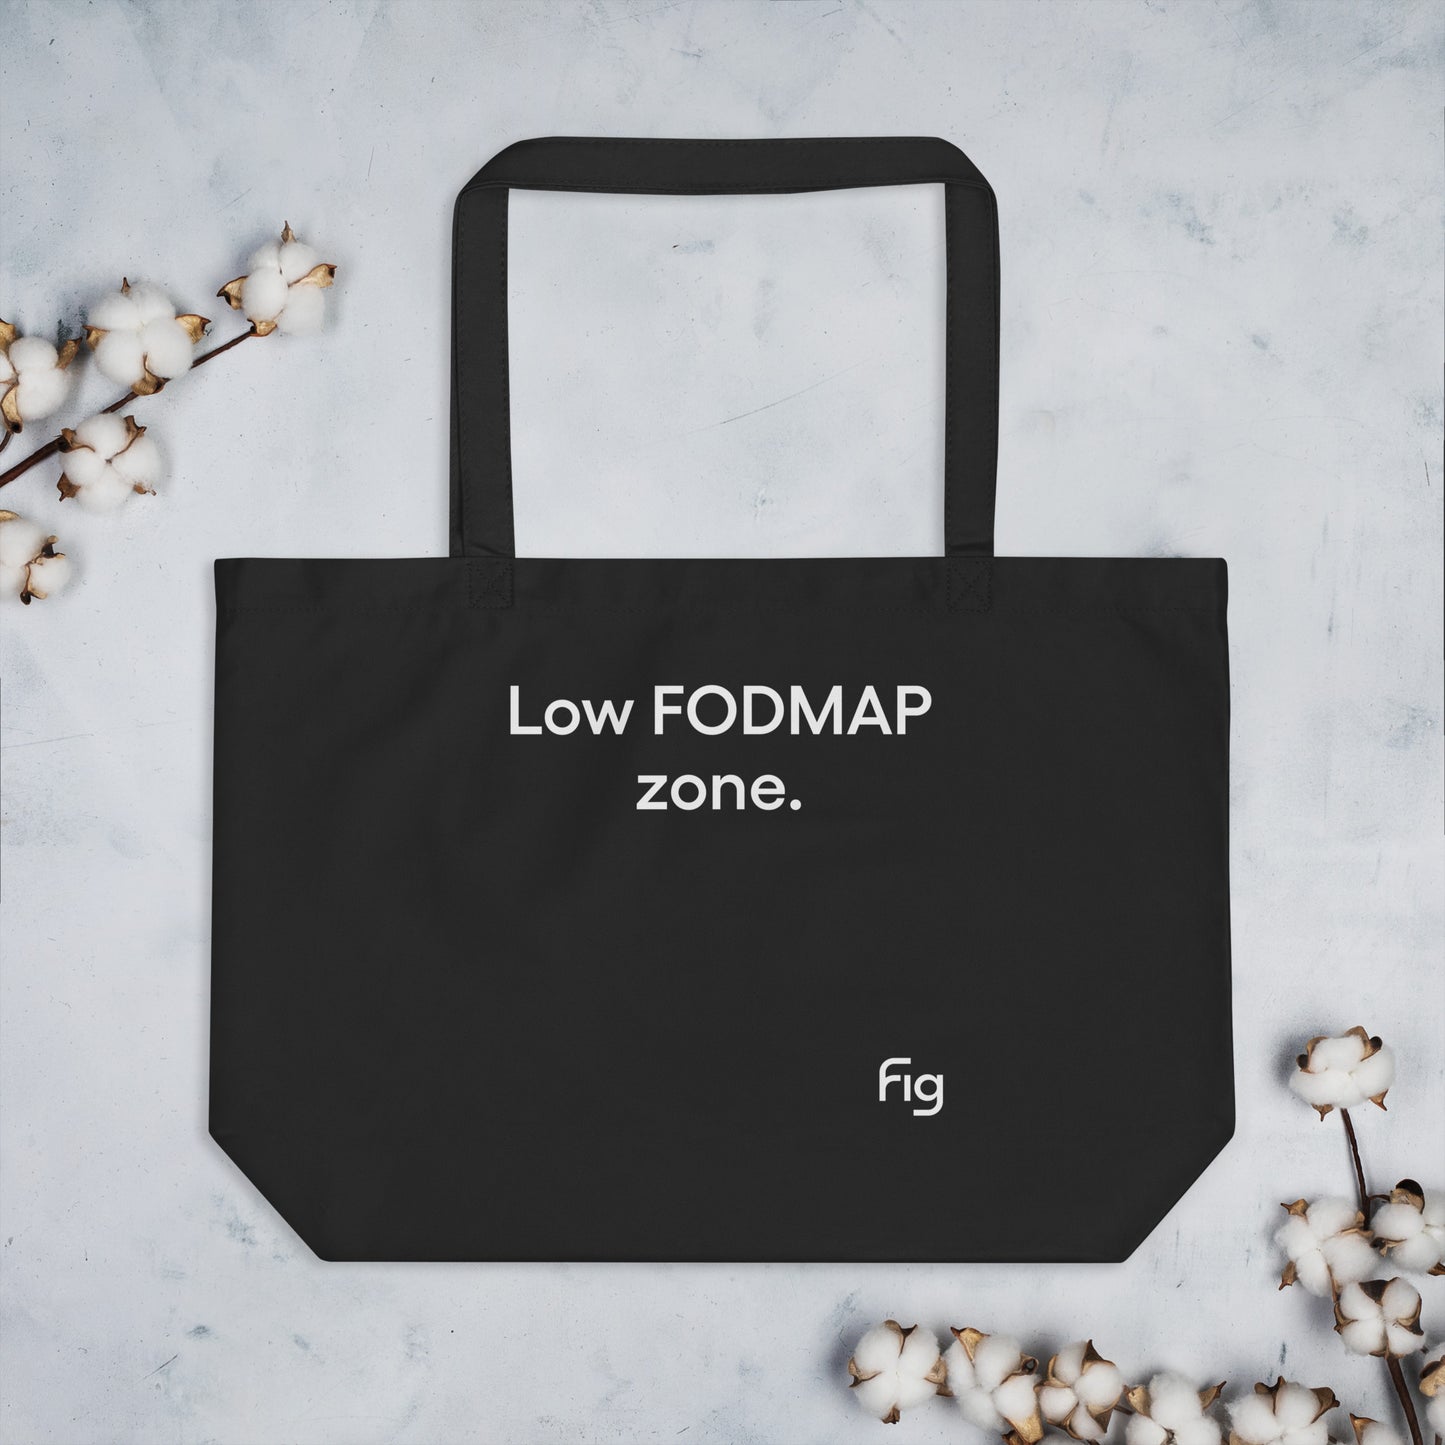 Low FODMAP zone | Large organic tote bag